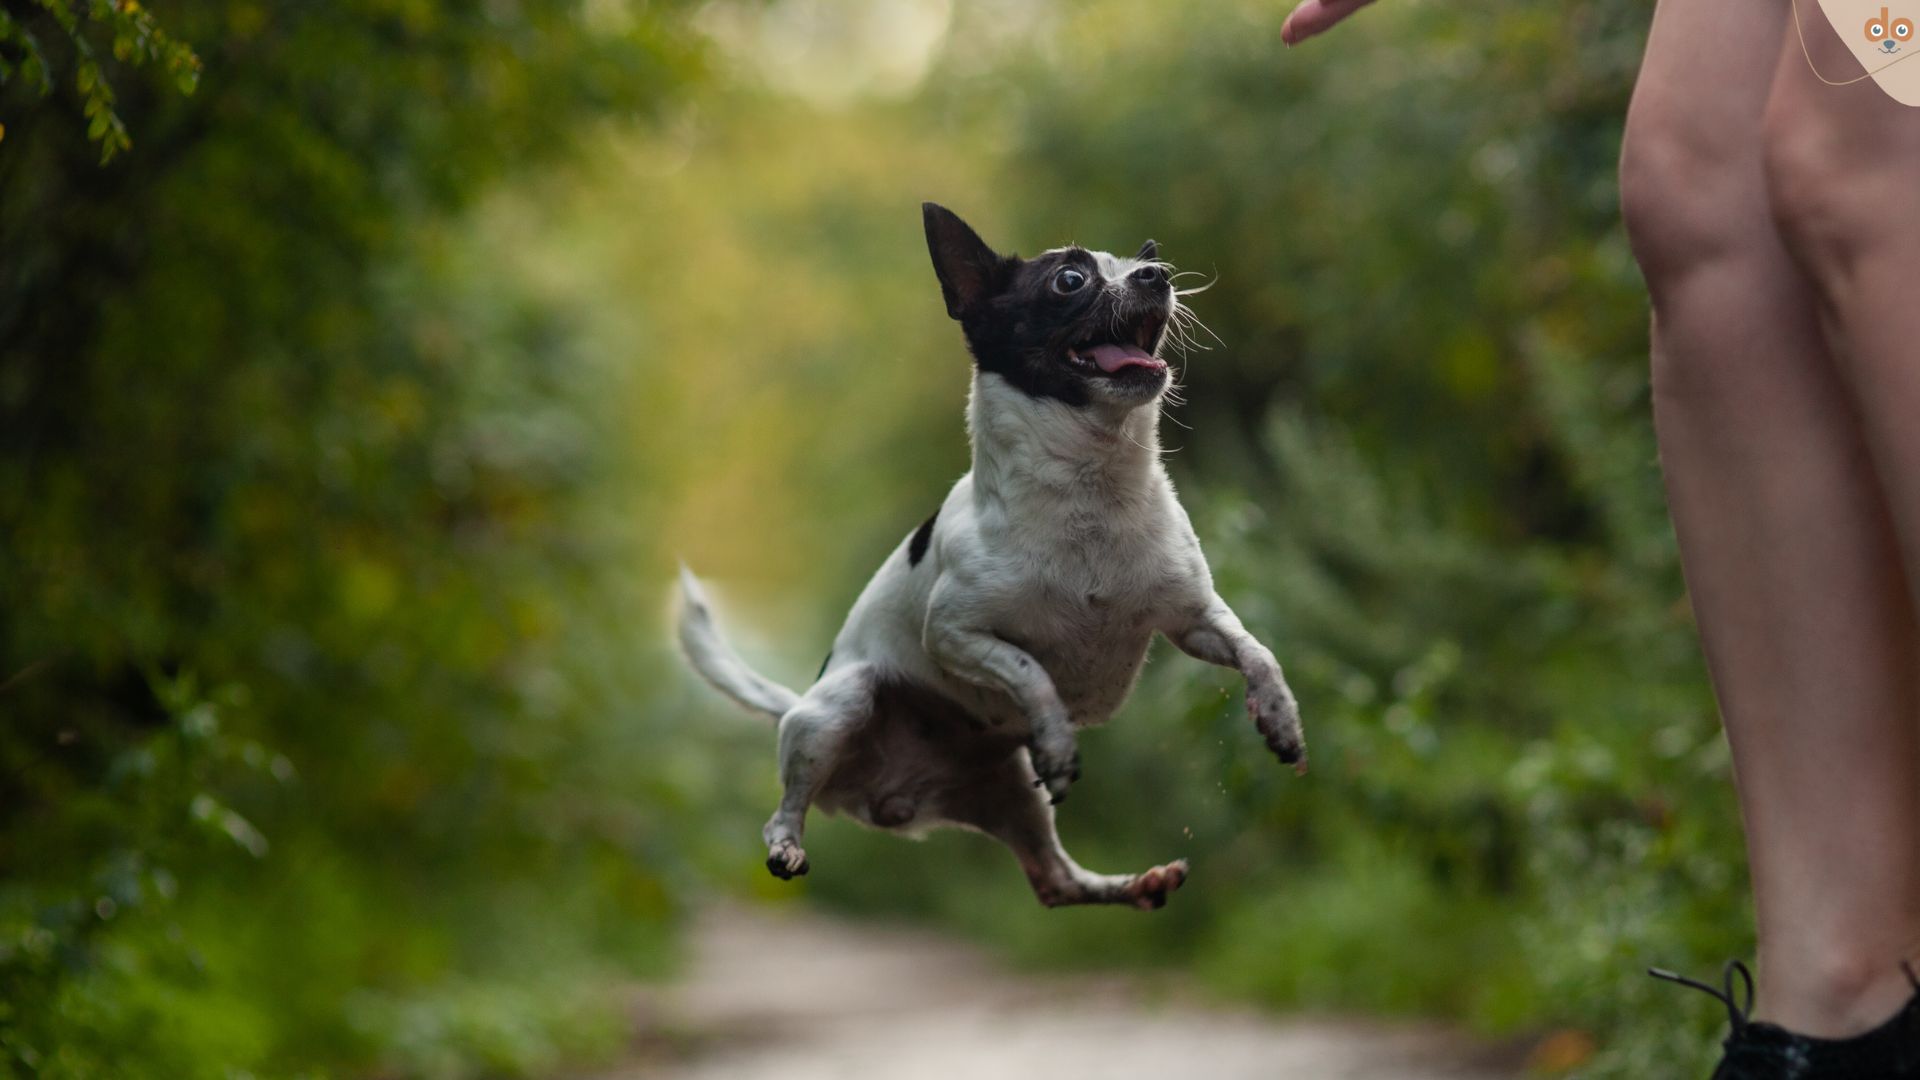 Kleiner Hund spring in Luft zu Mensch